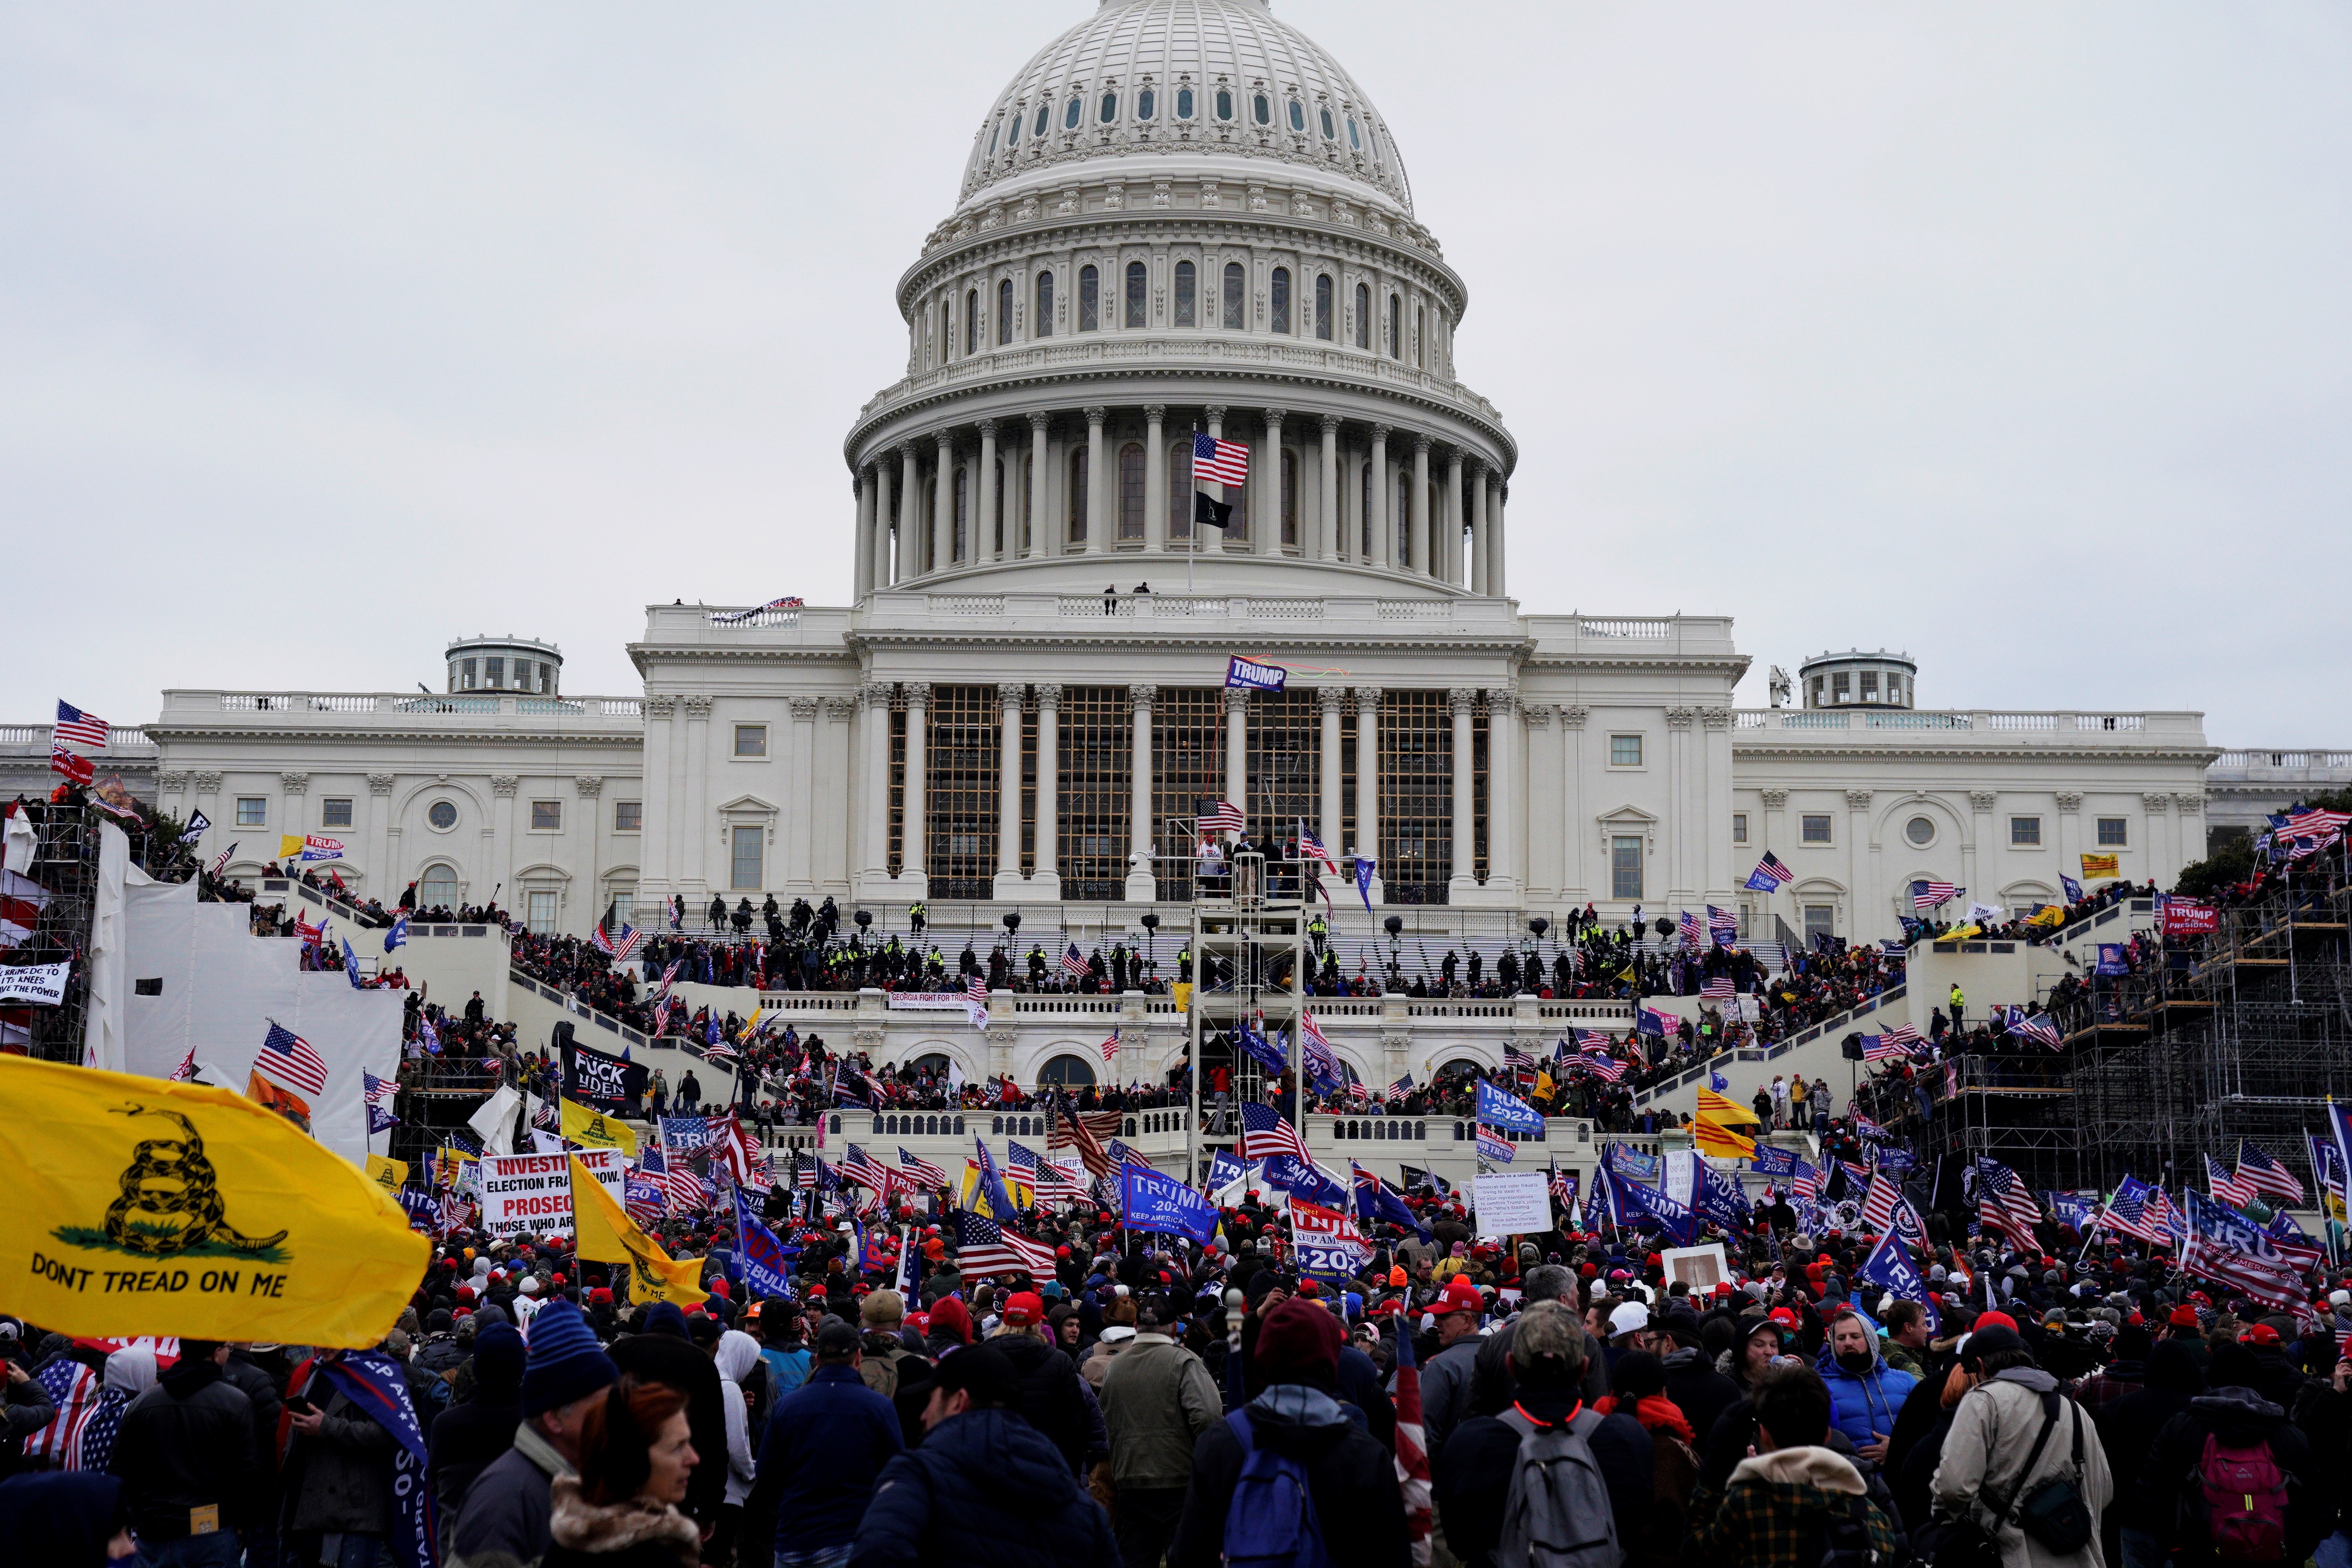 Los manifestantes partidarios del entonces presidente Donald Trump asaltan los terrenos del Capitolio de los Estados Unidos, en Washington, DC, Estados Unidos, el 6 de enero de 2021. EFE/EPA/WILL OLIVER/Archivo
